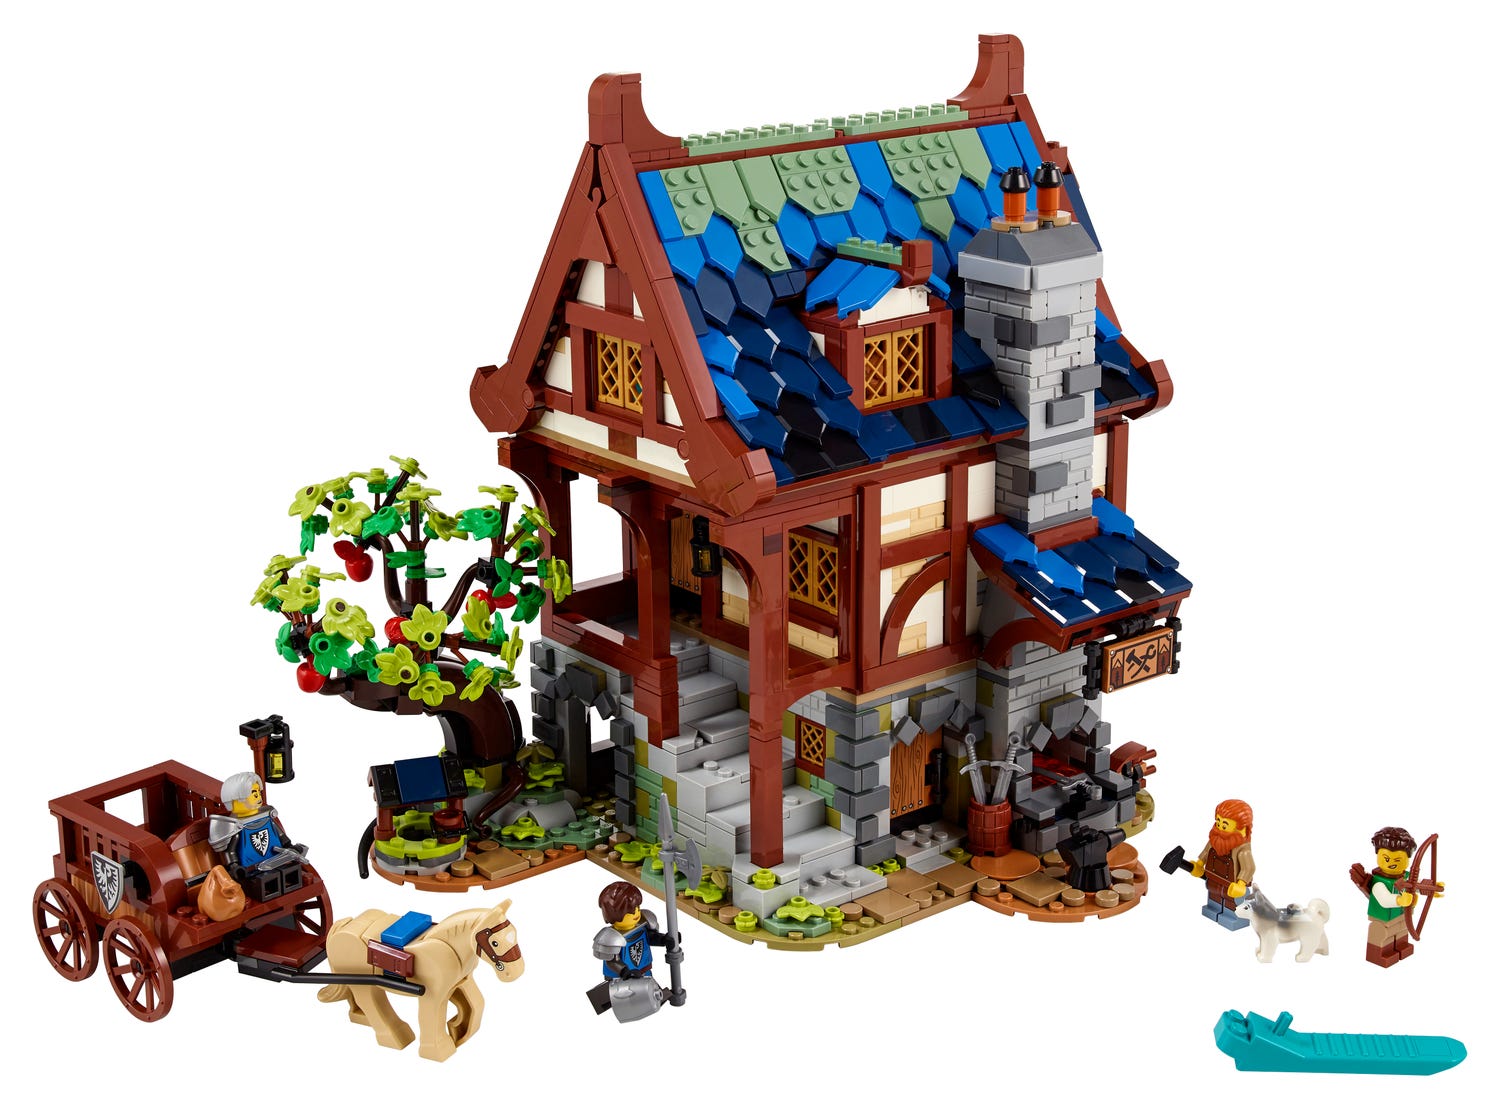 Die Lego Mittelalterliche Schmiede 21325 zählt zu den 5 besten Lego Sets 2021.